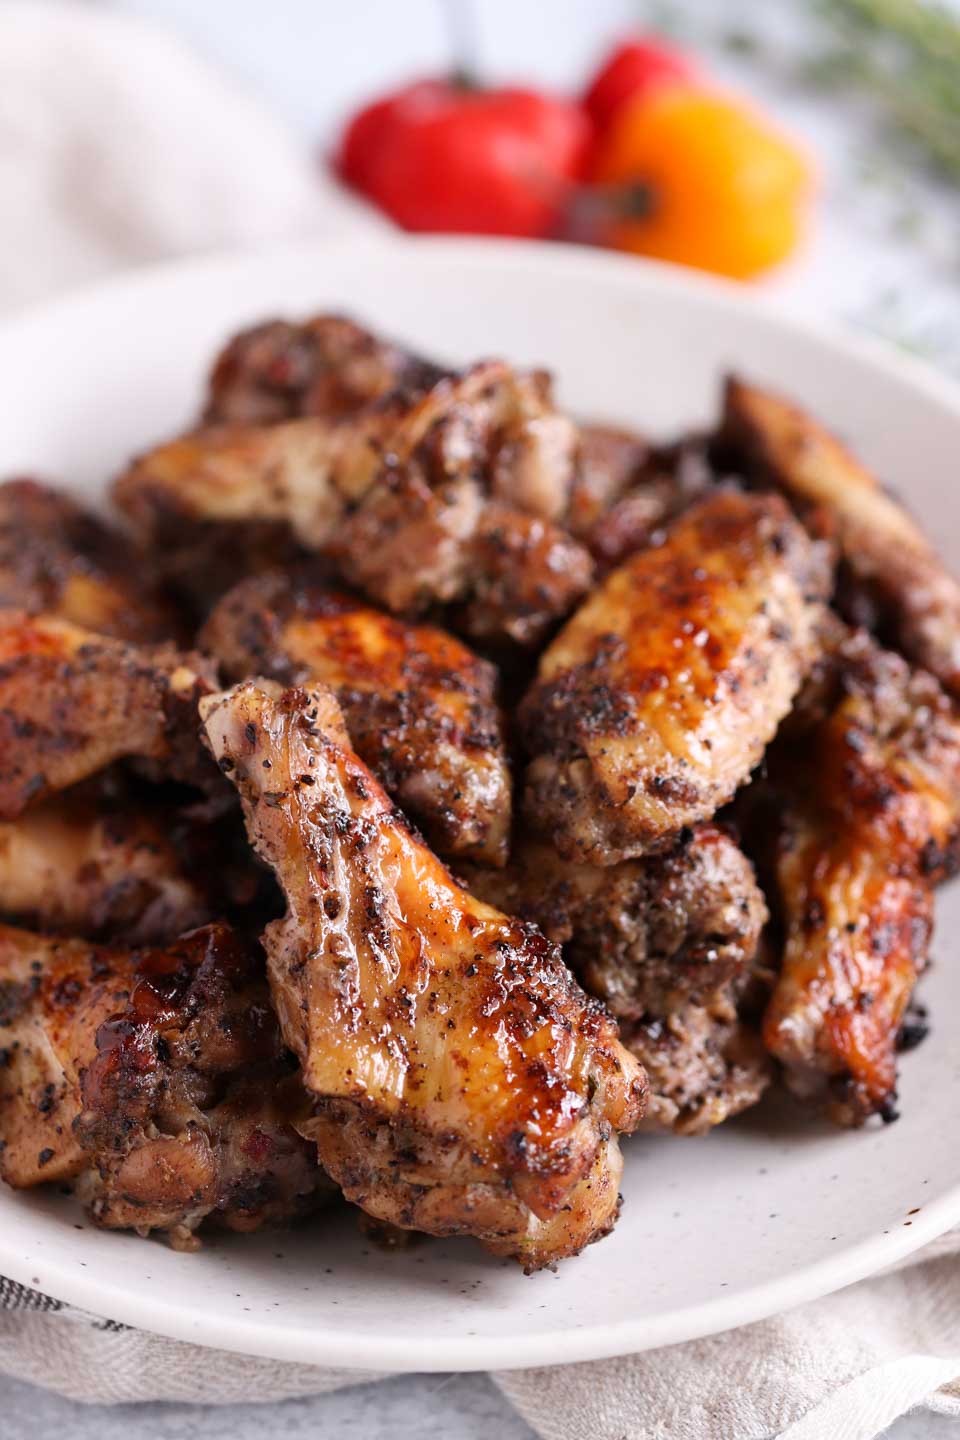 Grilled Jerk Chicken wings